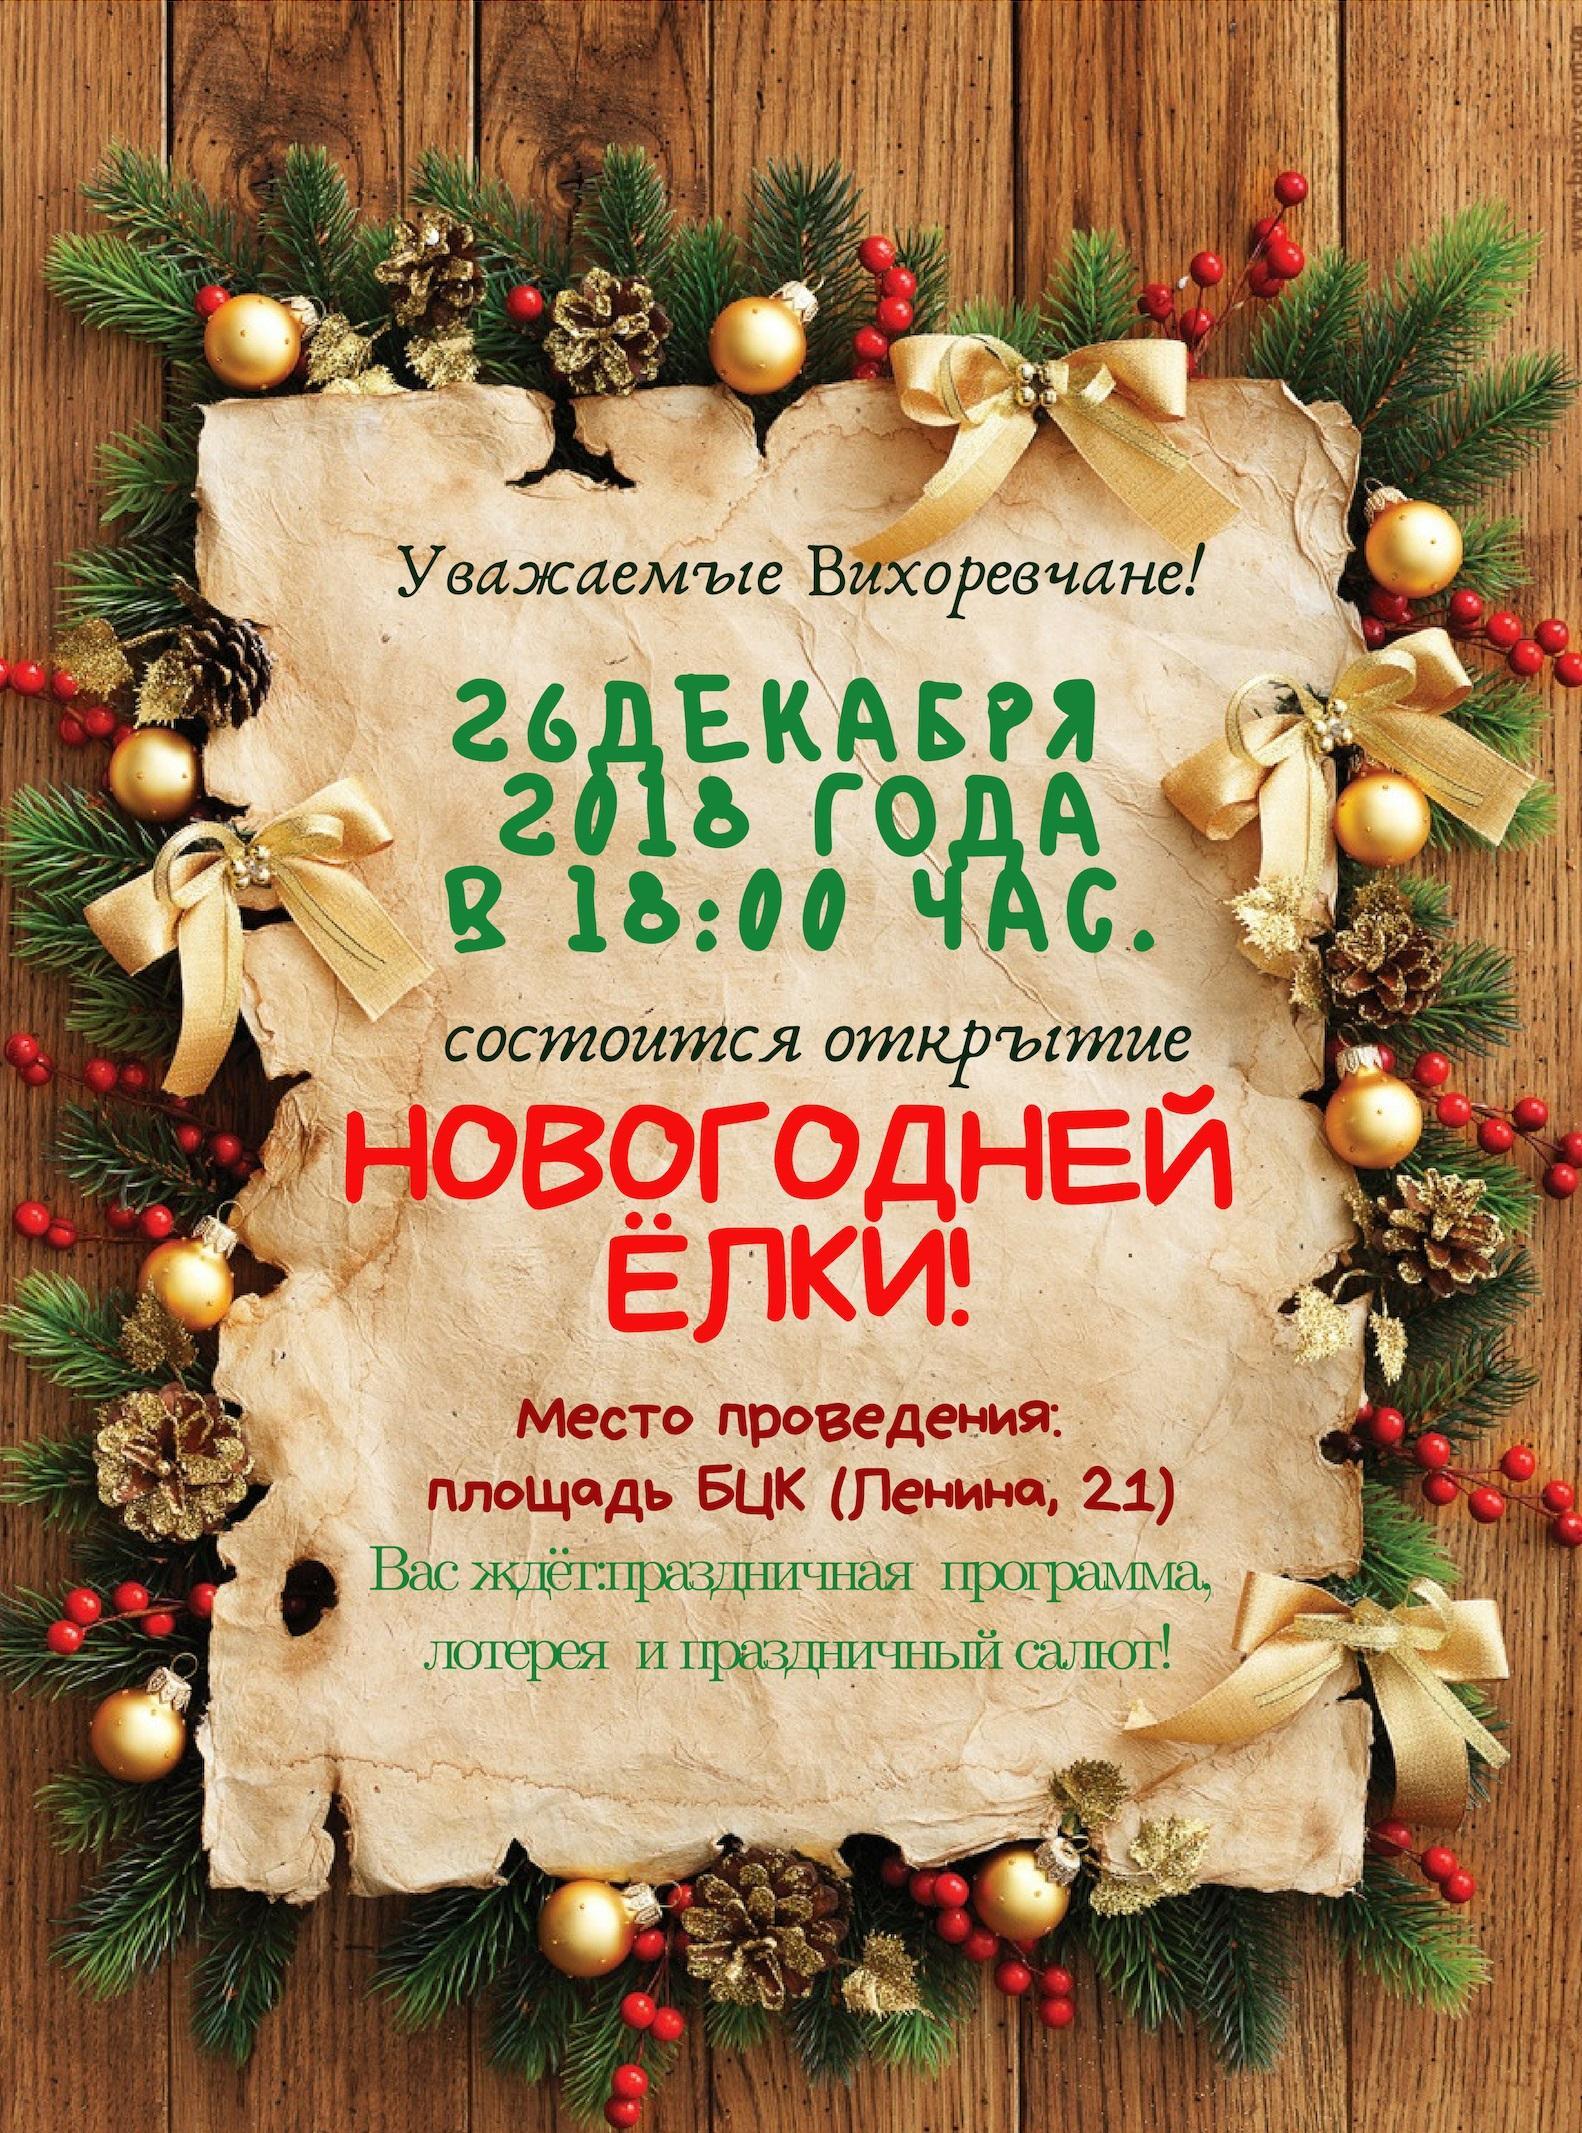 Новогодняя ёлка в Вихоревке откроется 26 декабря